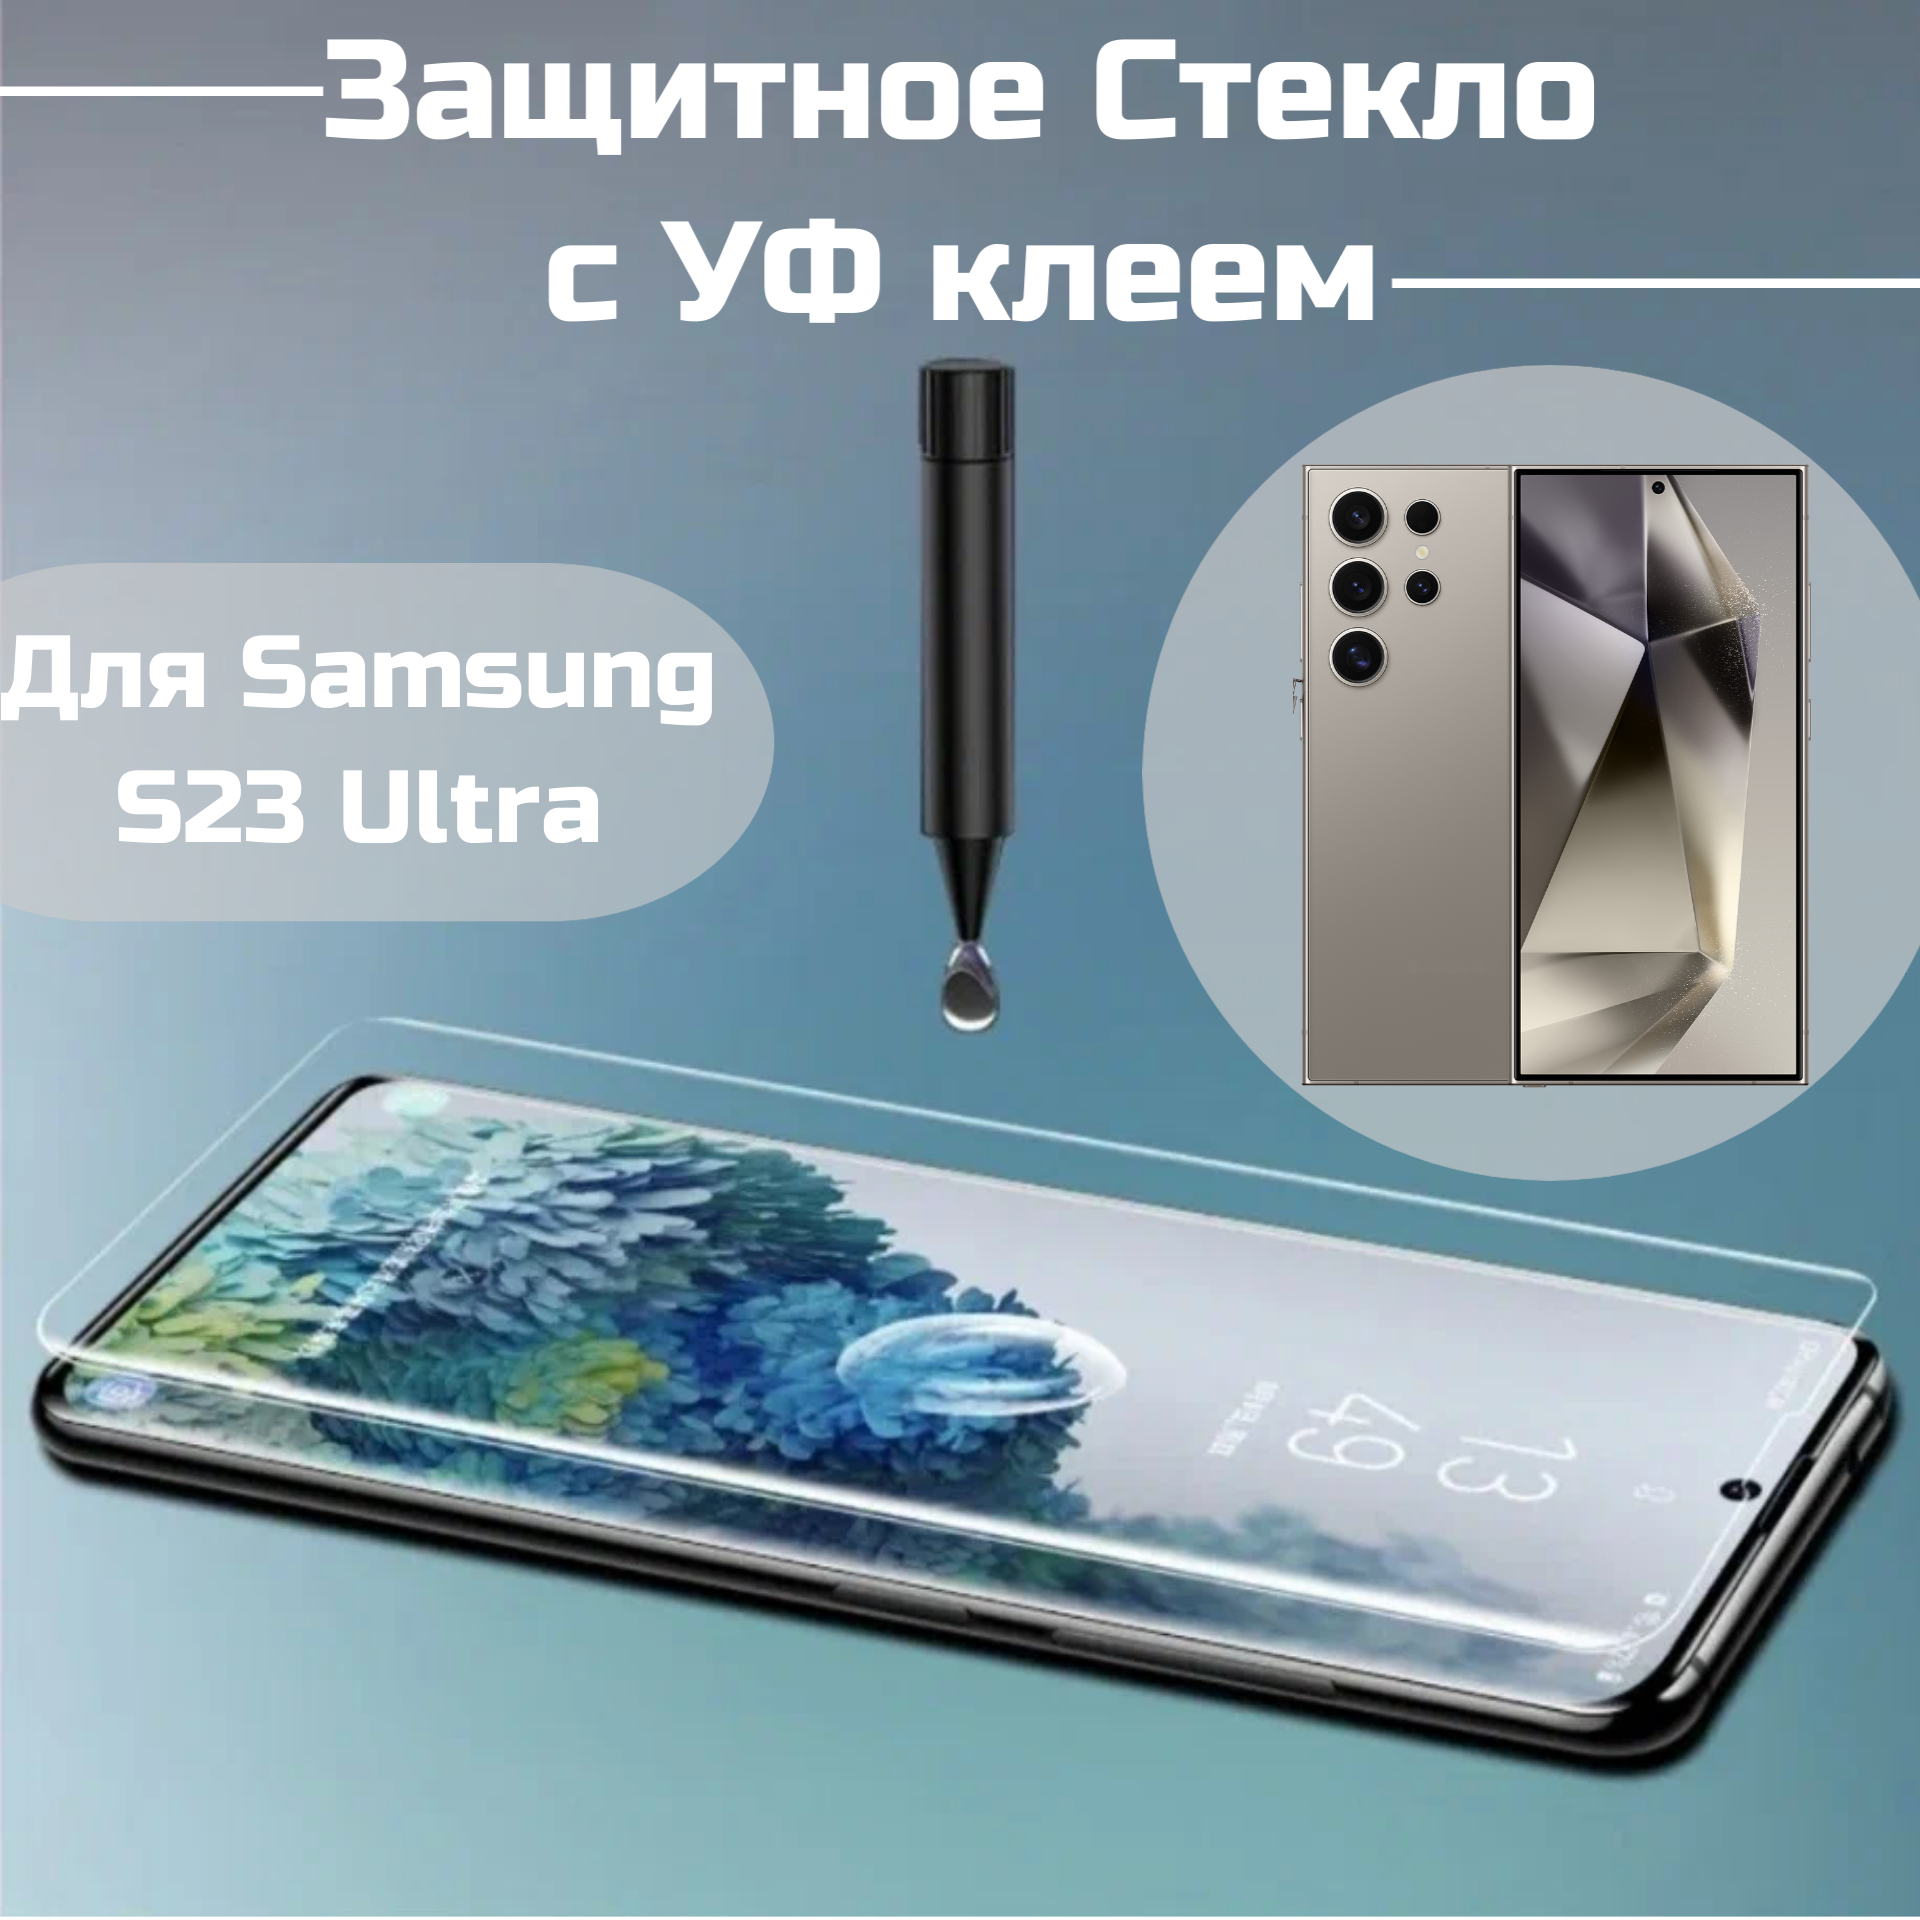 Защитное стекло Samsung S23 Ultra с уф клеем и лампой Полноэкранное стекло